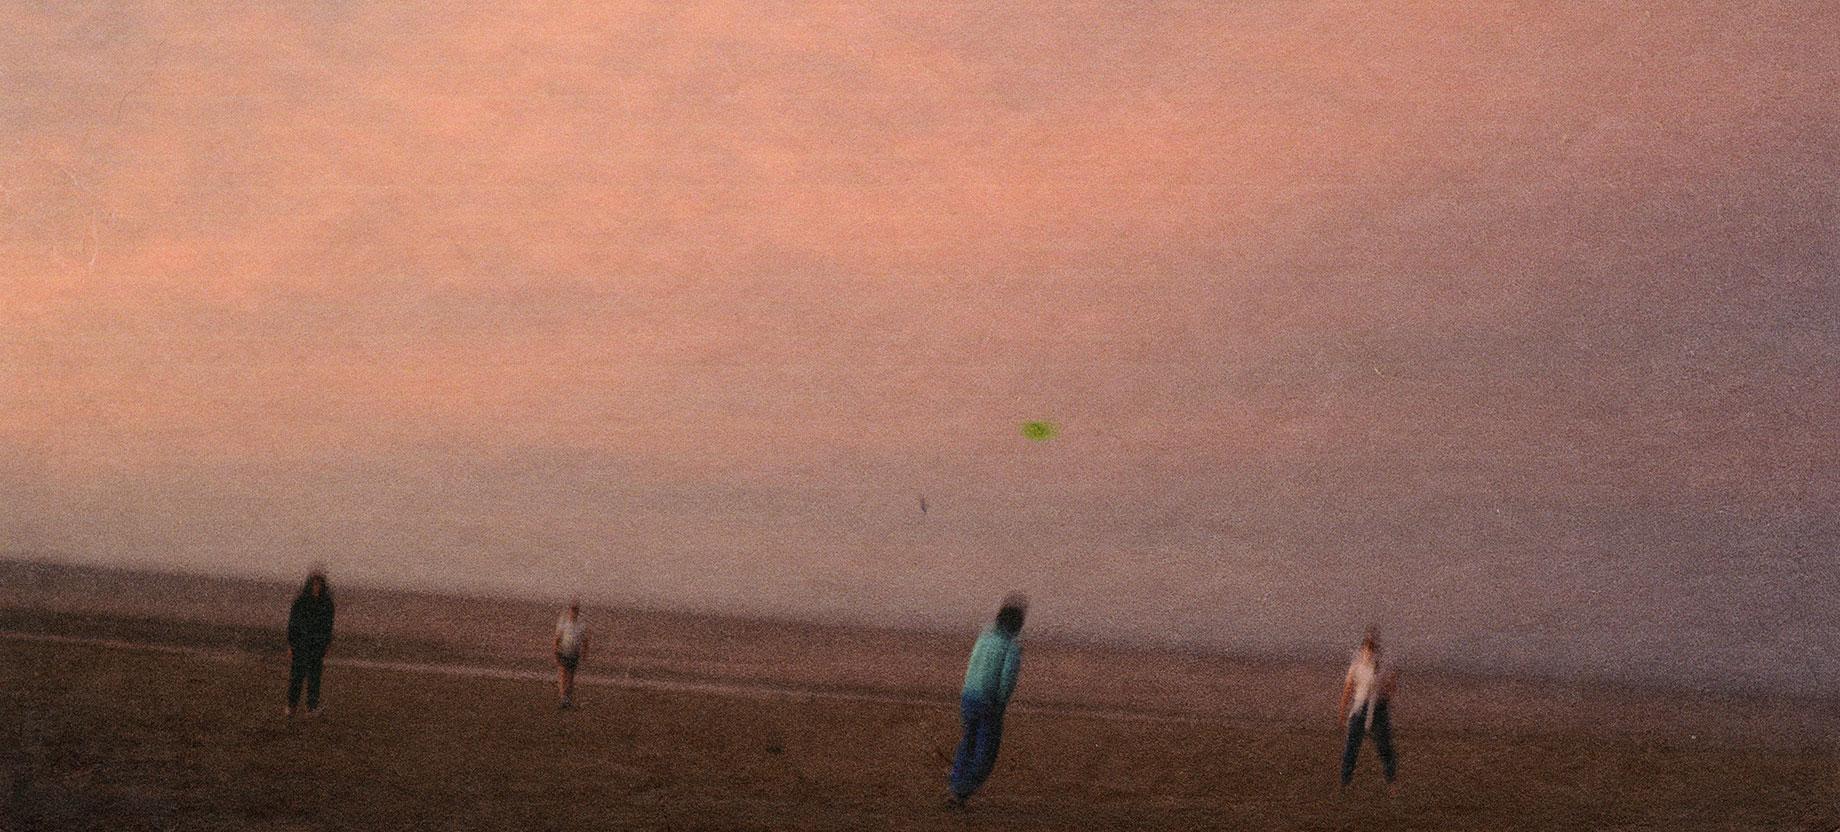 Dolorès Marat, Les joueurs de frisbee, Trouville-sur-Mer, 1994, 21h, tirage couleur, procédé Fresson